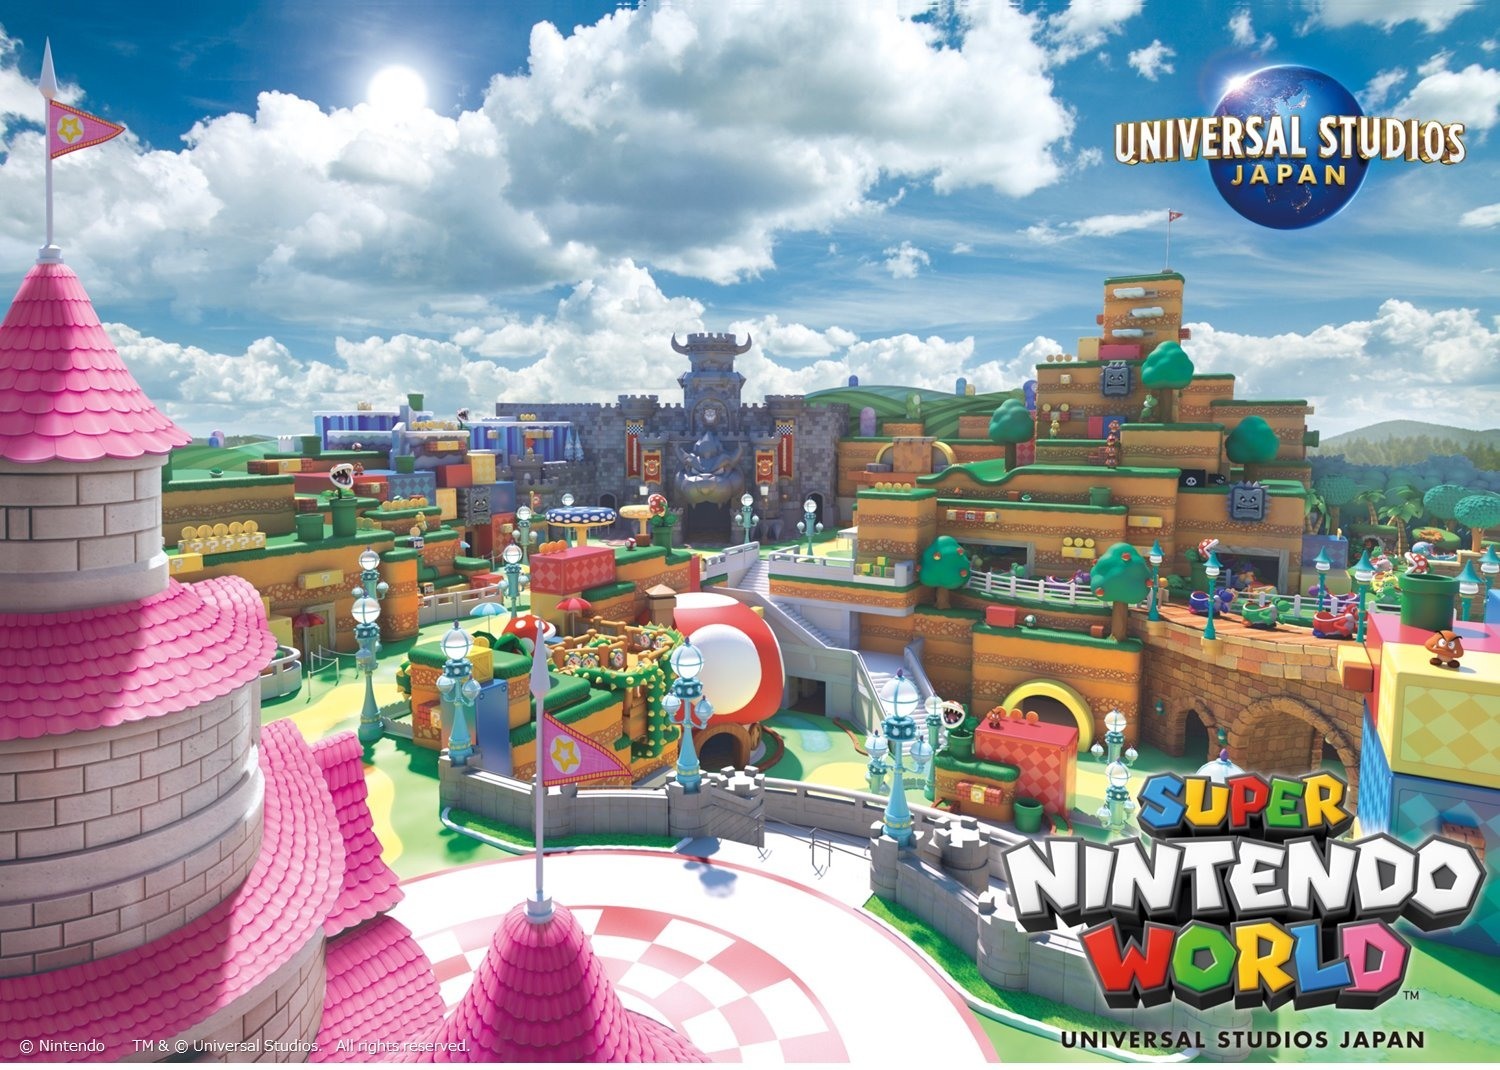 日本環球影城公開任天堂園區 Super Nintendo World Mv 打造全新互動